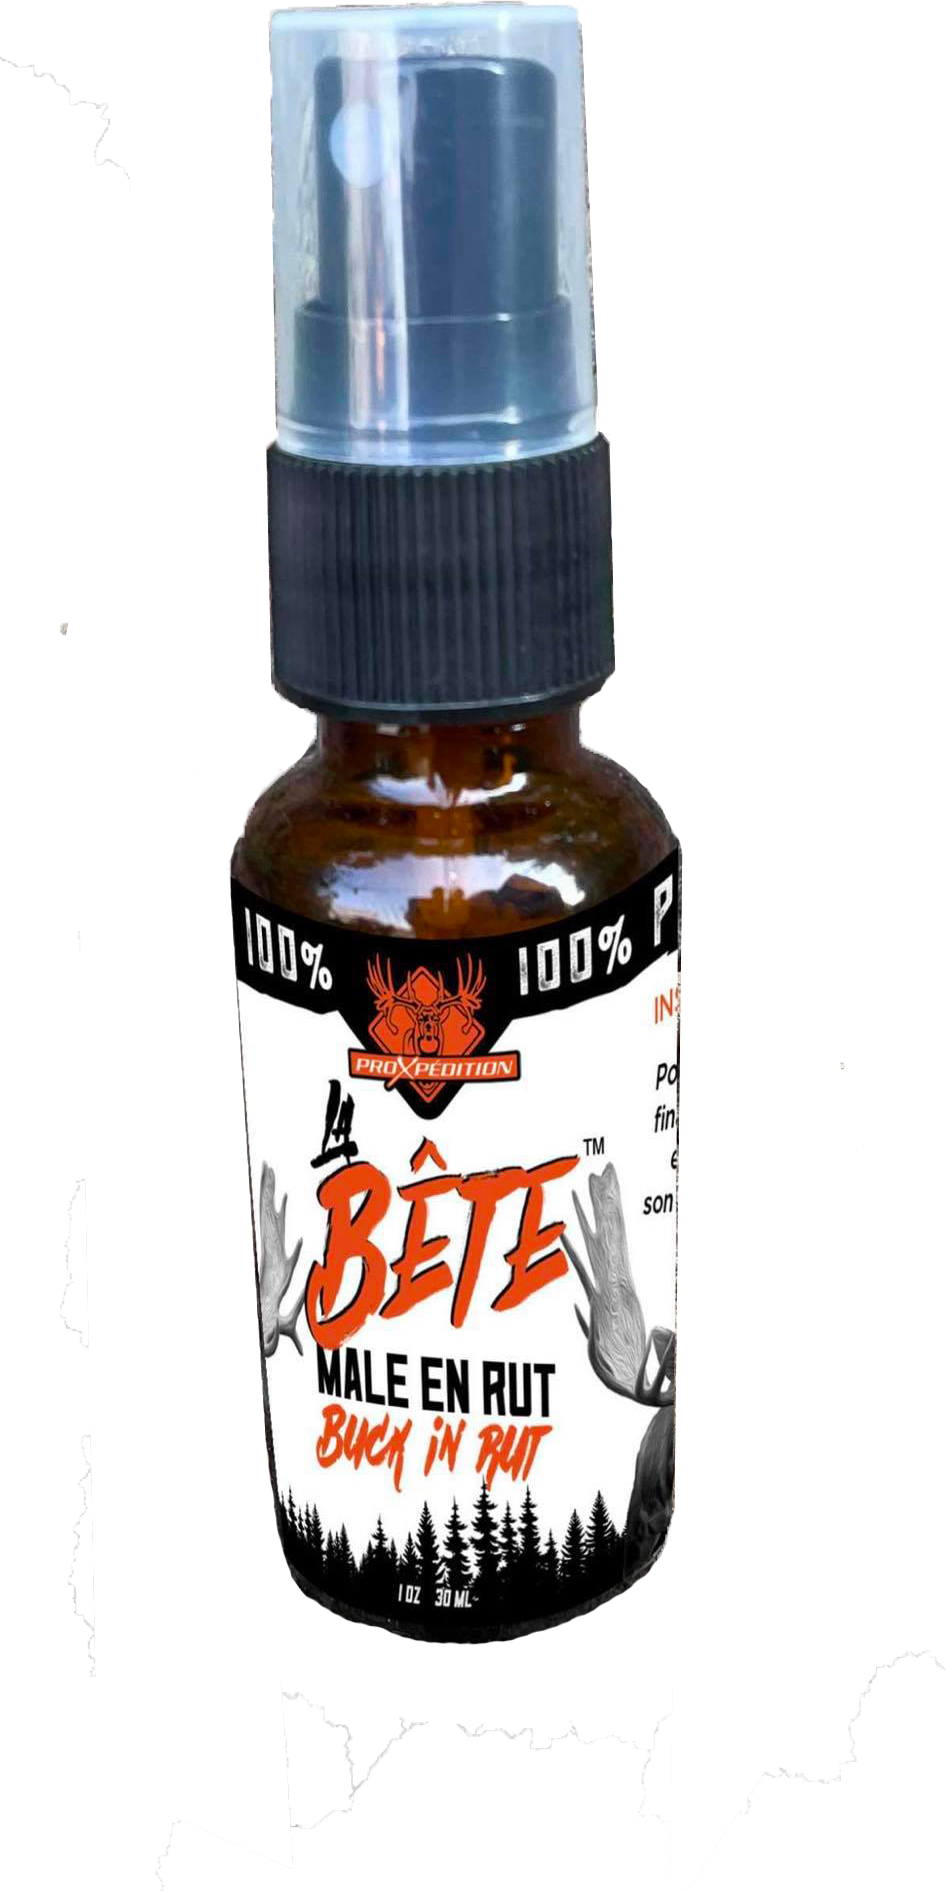 LA BÊTE ™️ - Bull in rut 100% natural urine